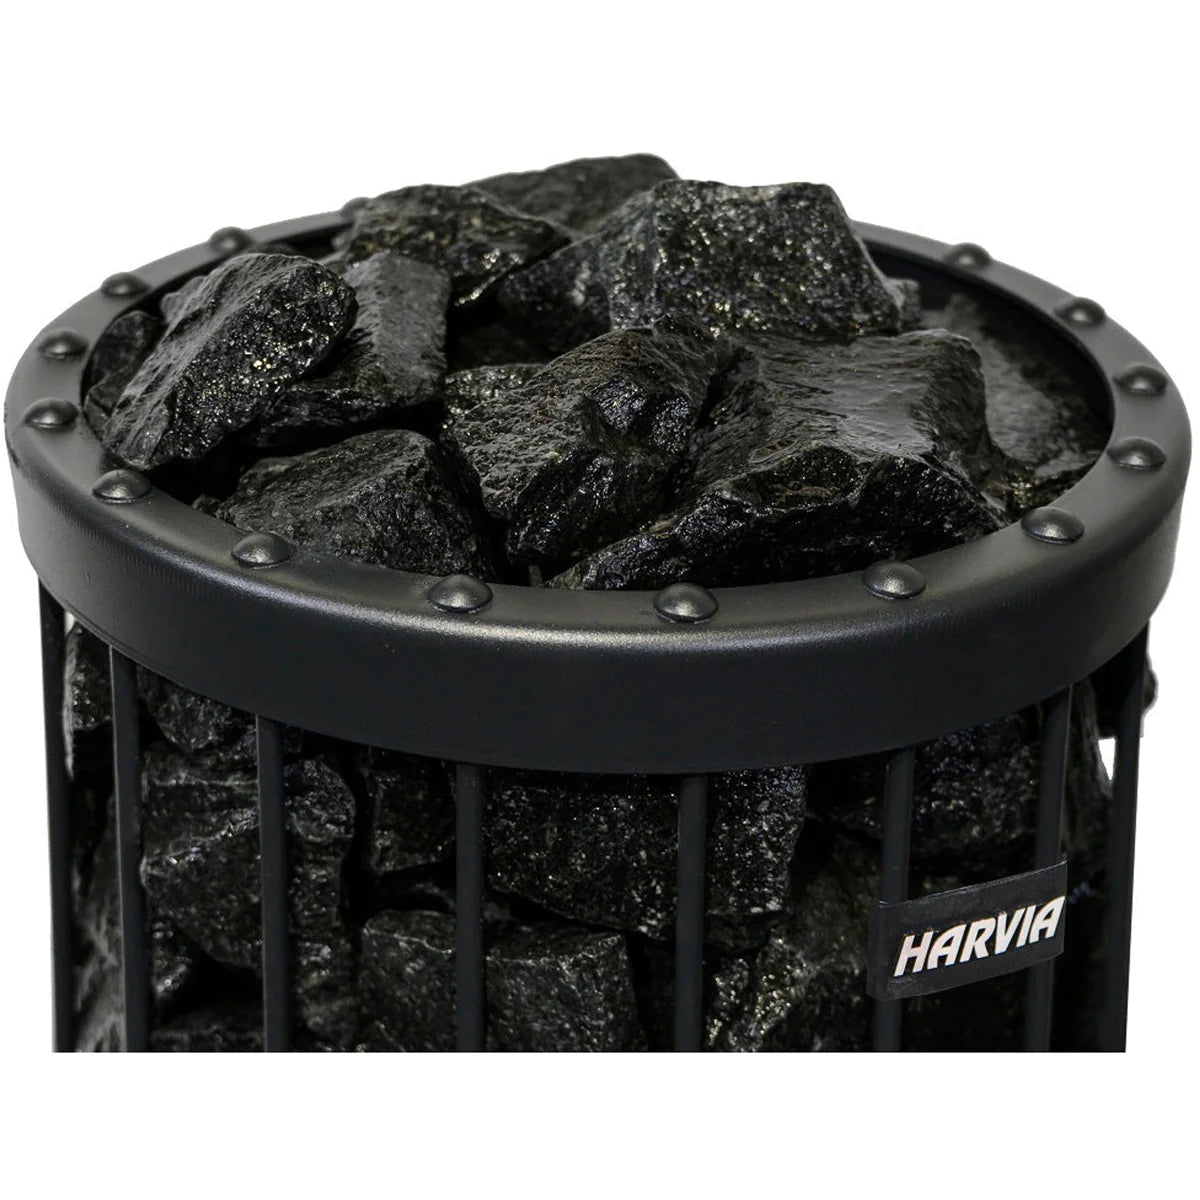 Harvia Black Vulcanite Sauna Stones 10-15 cm / 20 kg AC3045 - Select Saunas